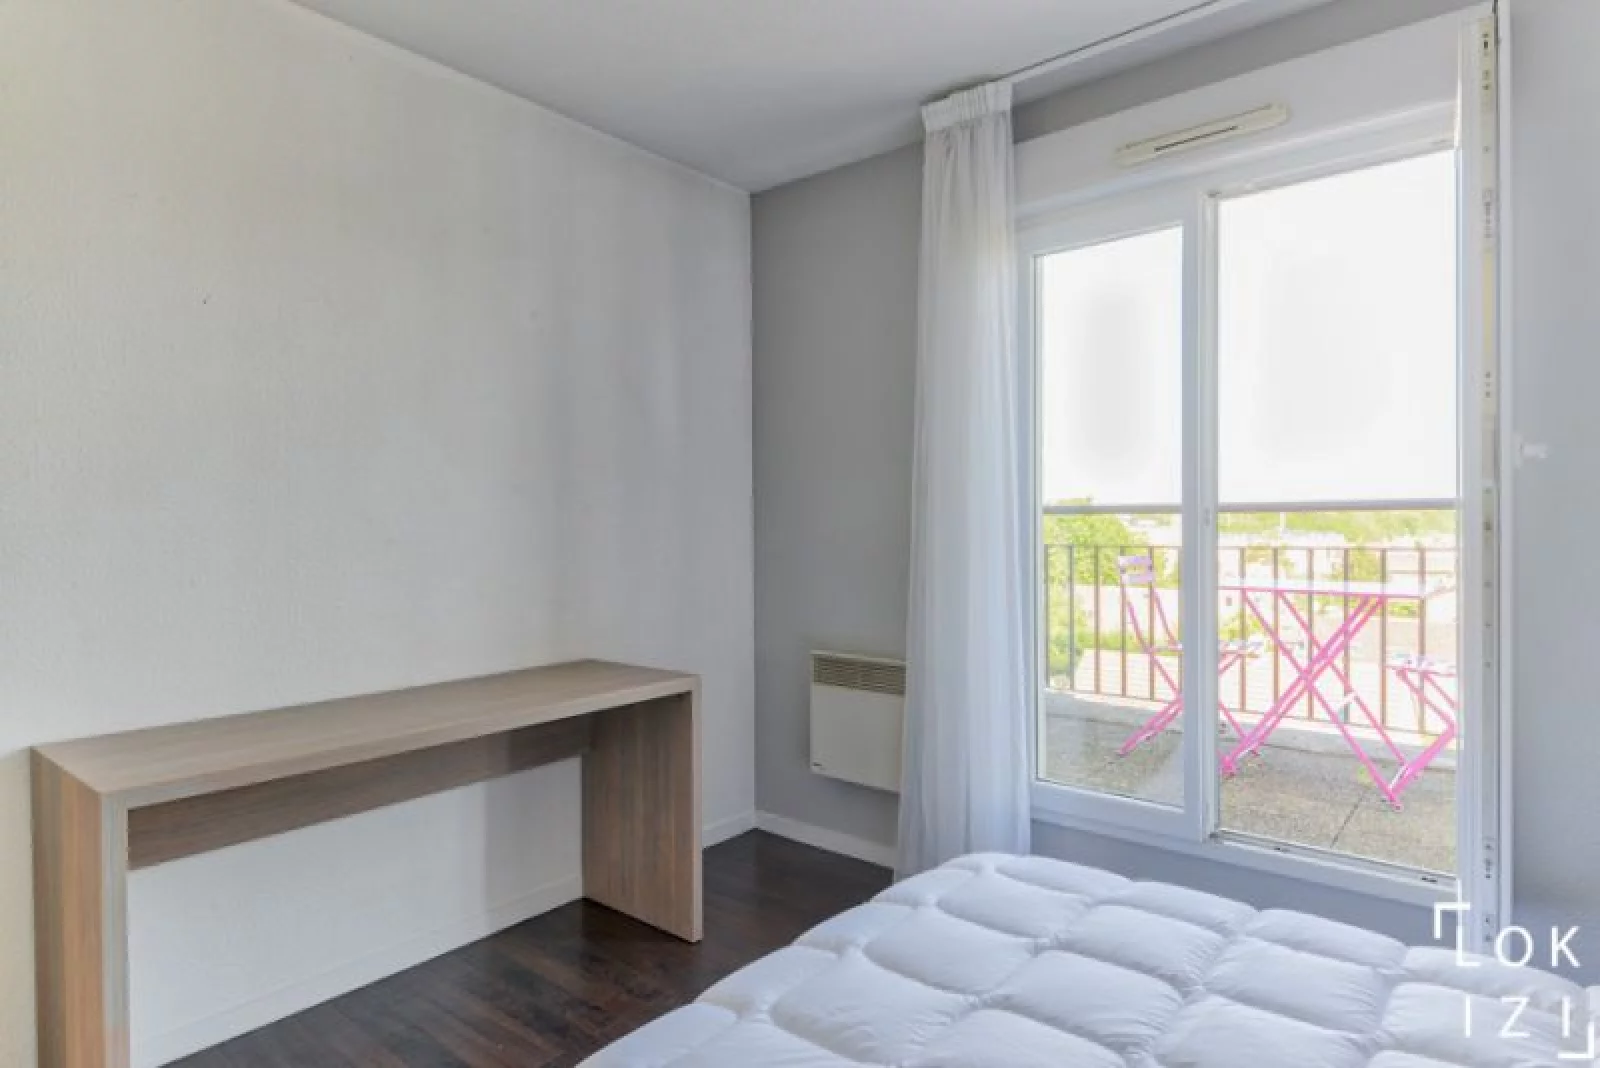 Location appartement meublé 2 pièces 45m² (Paris Est - Bry s/ Marne)